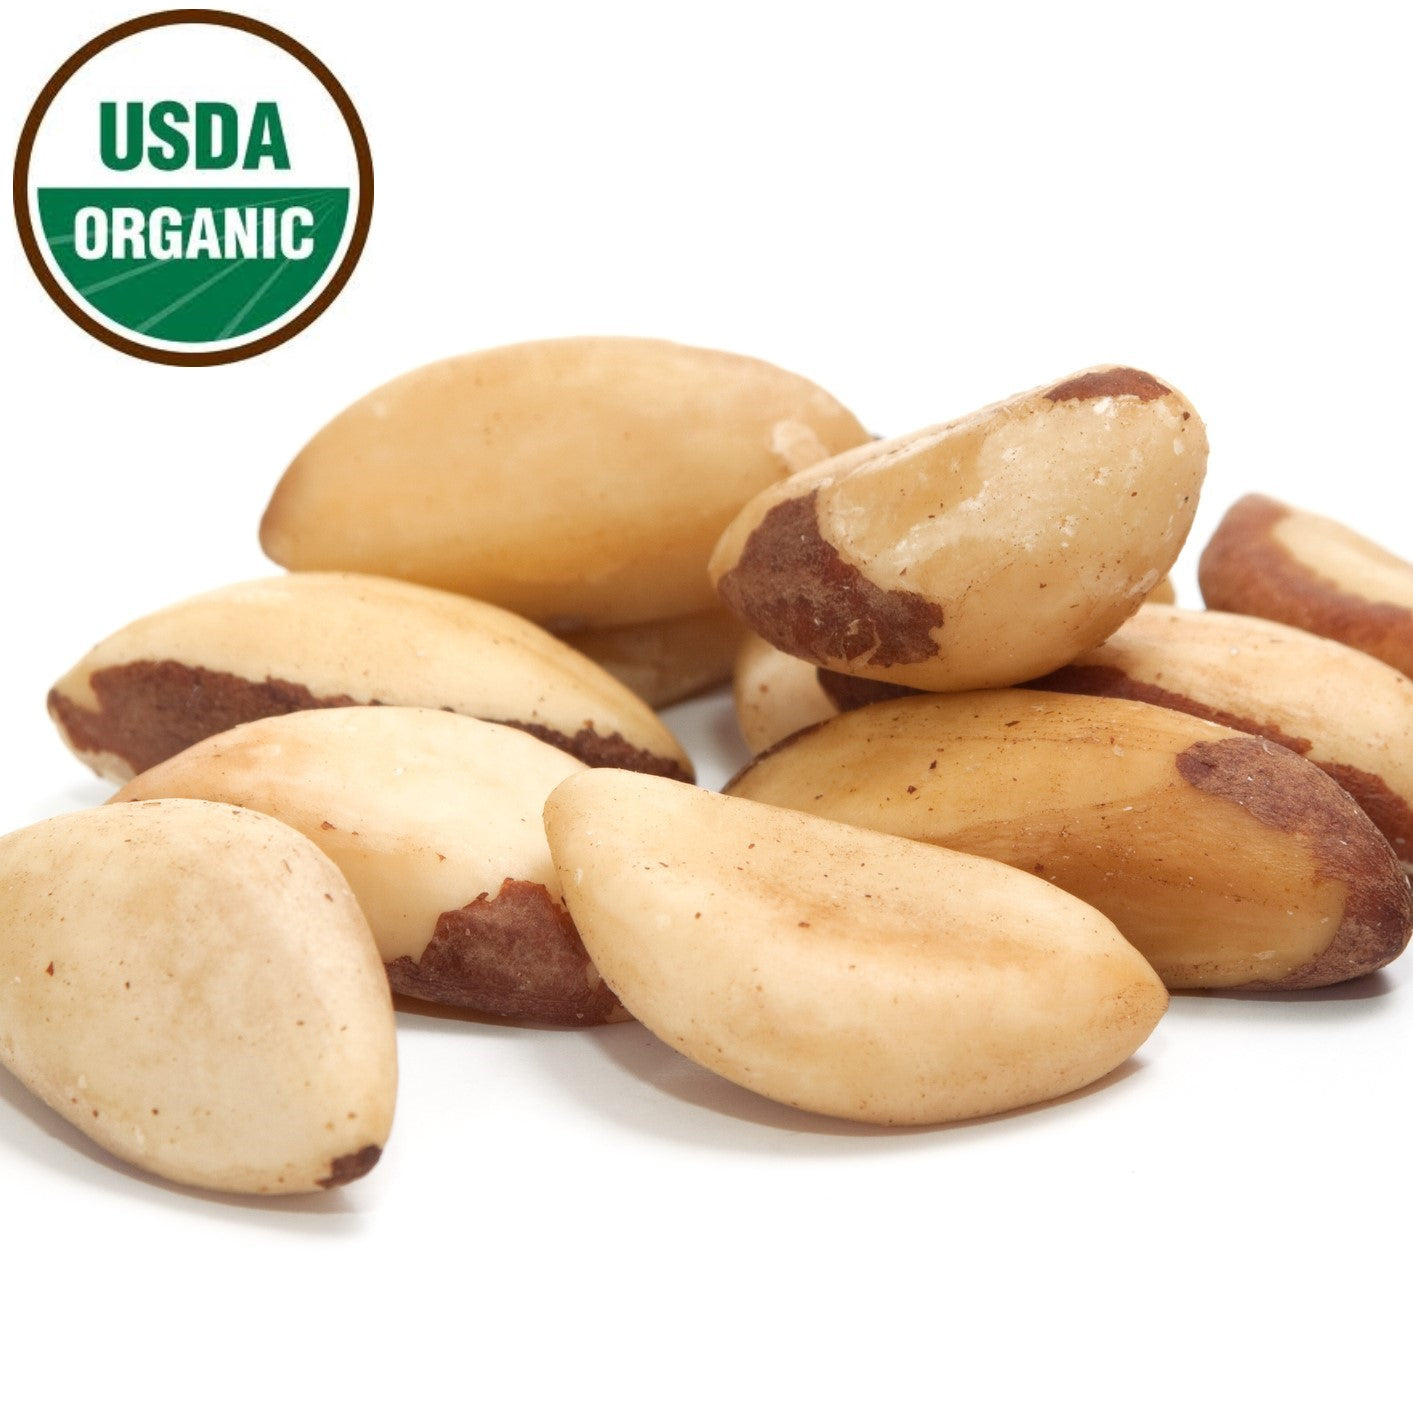 Raw organic Brazil nuts